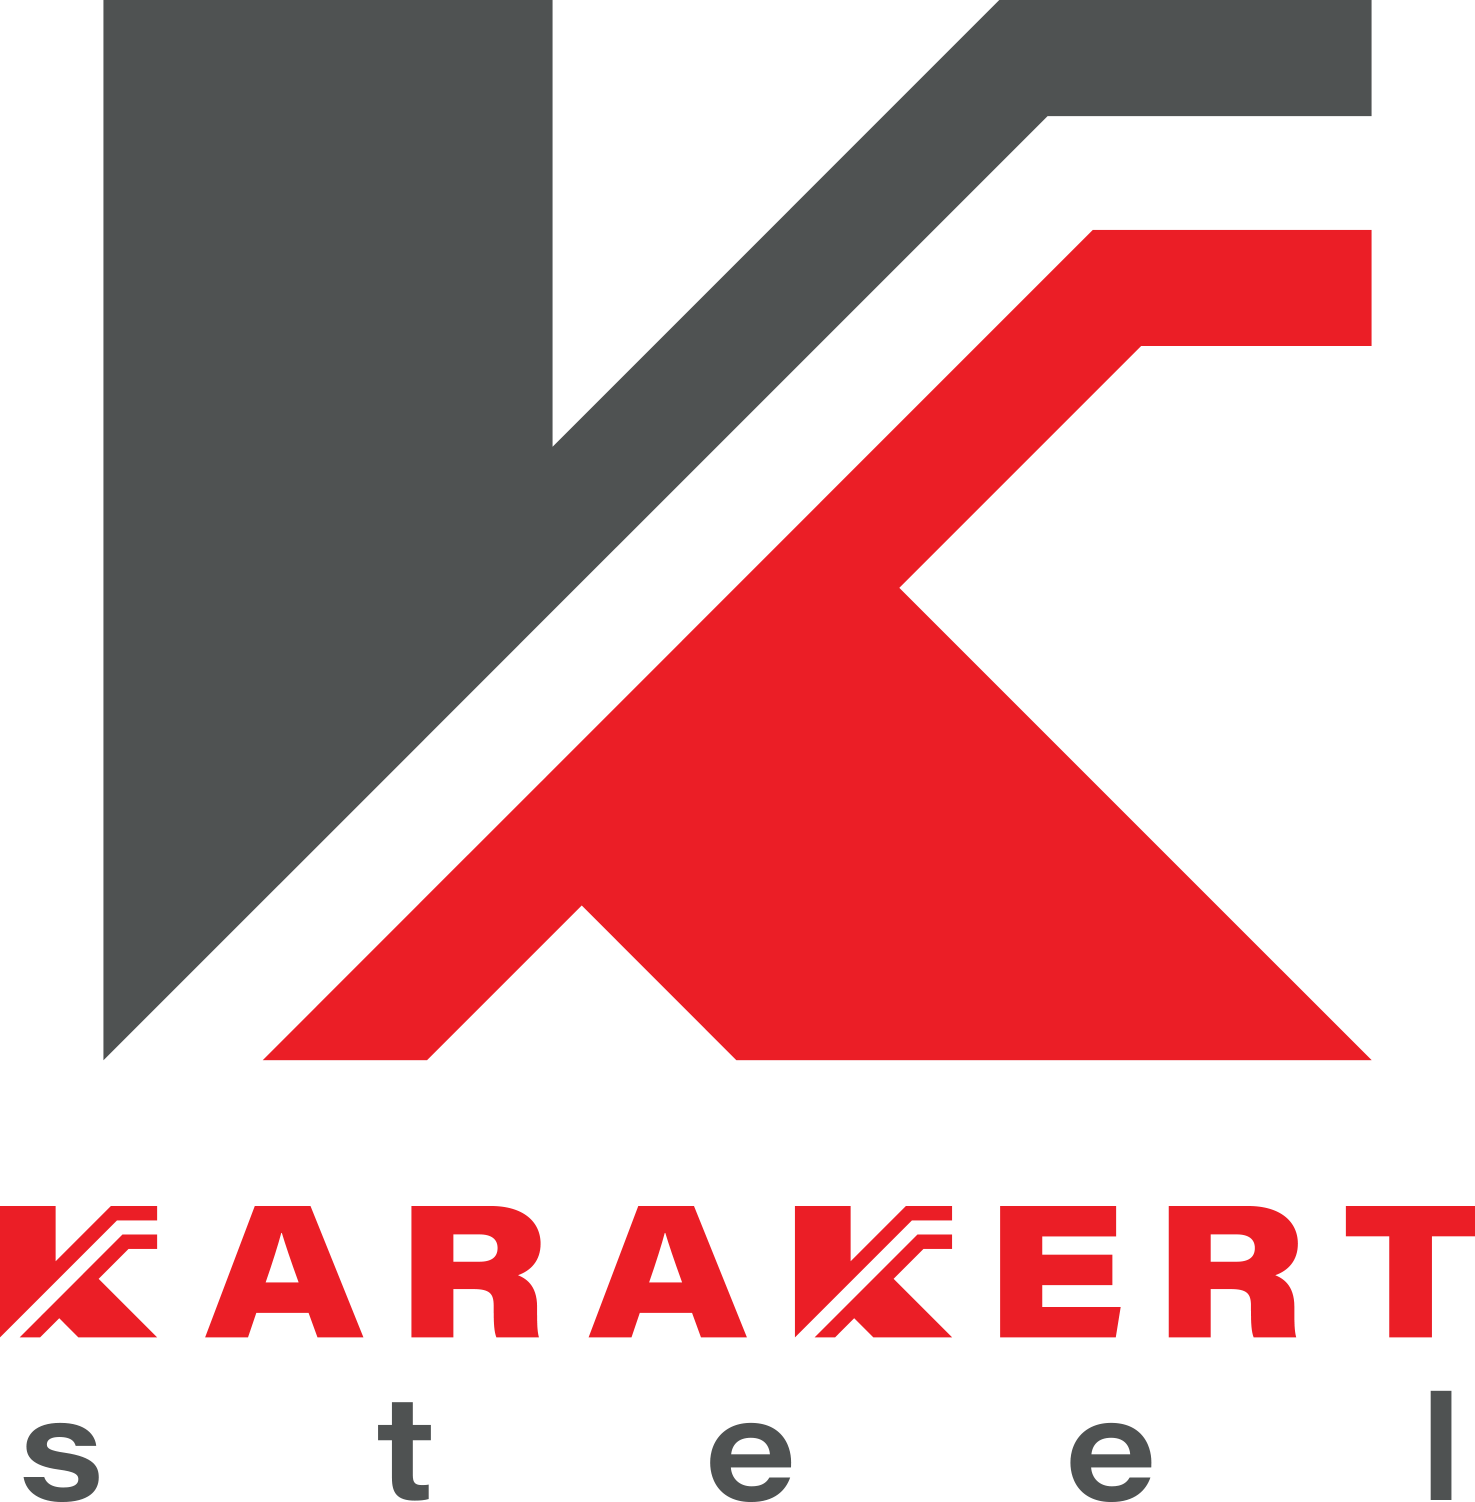 Karakert Steel